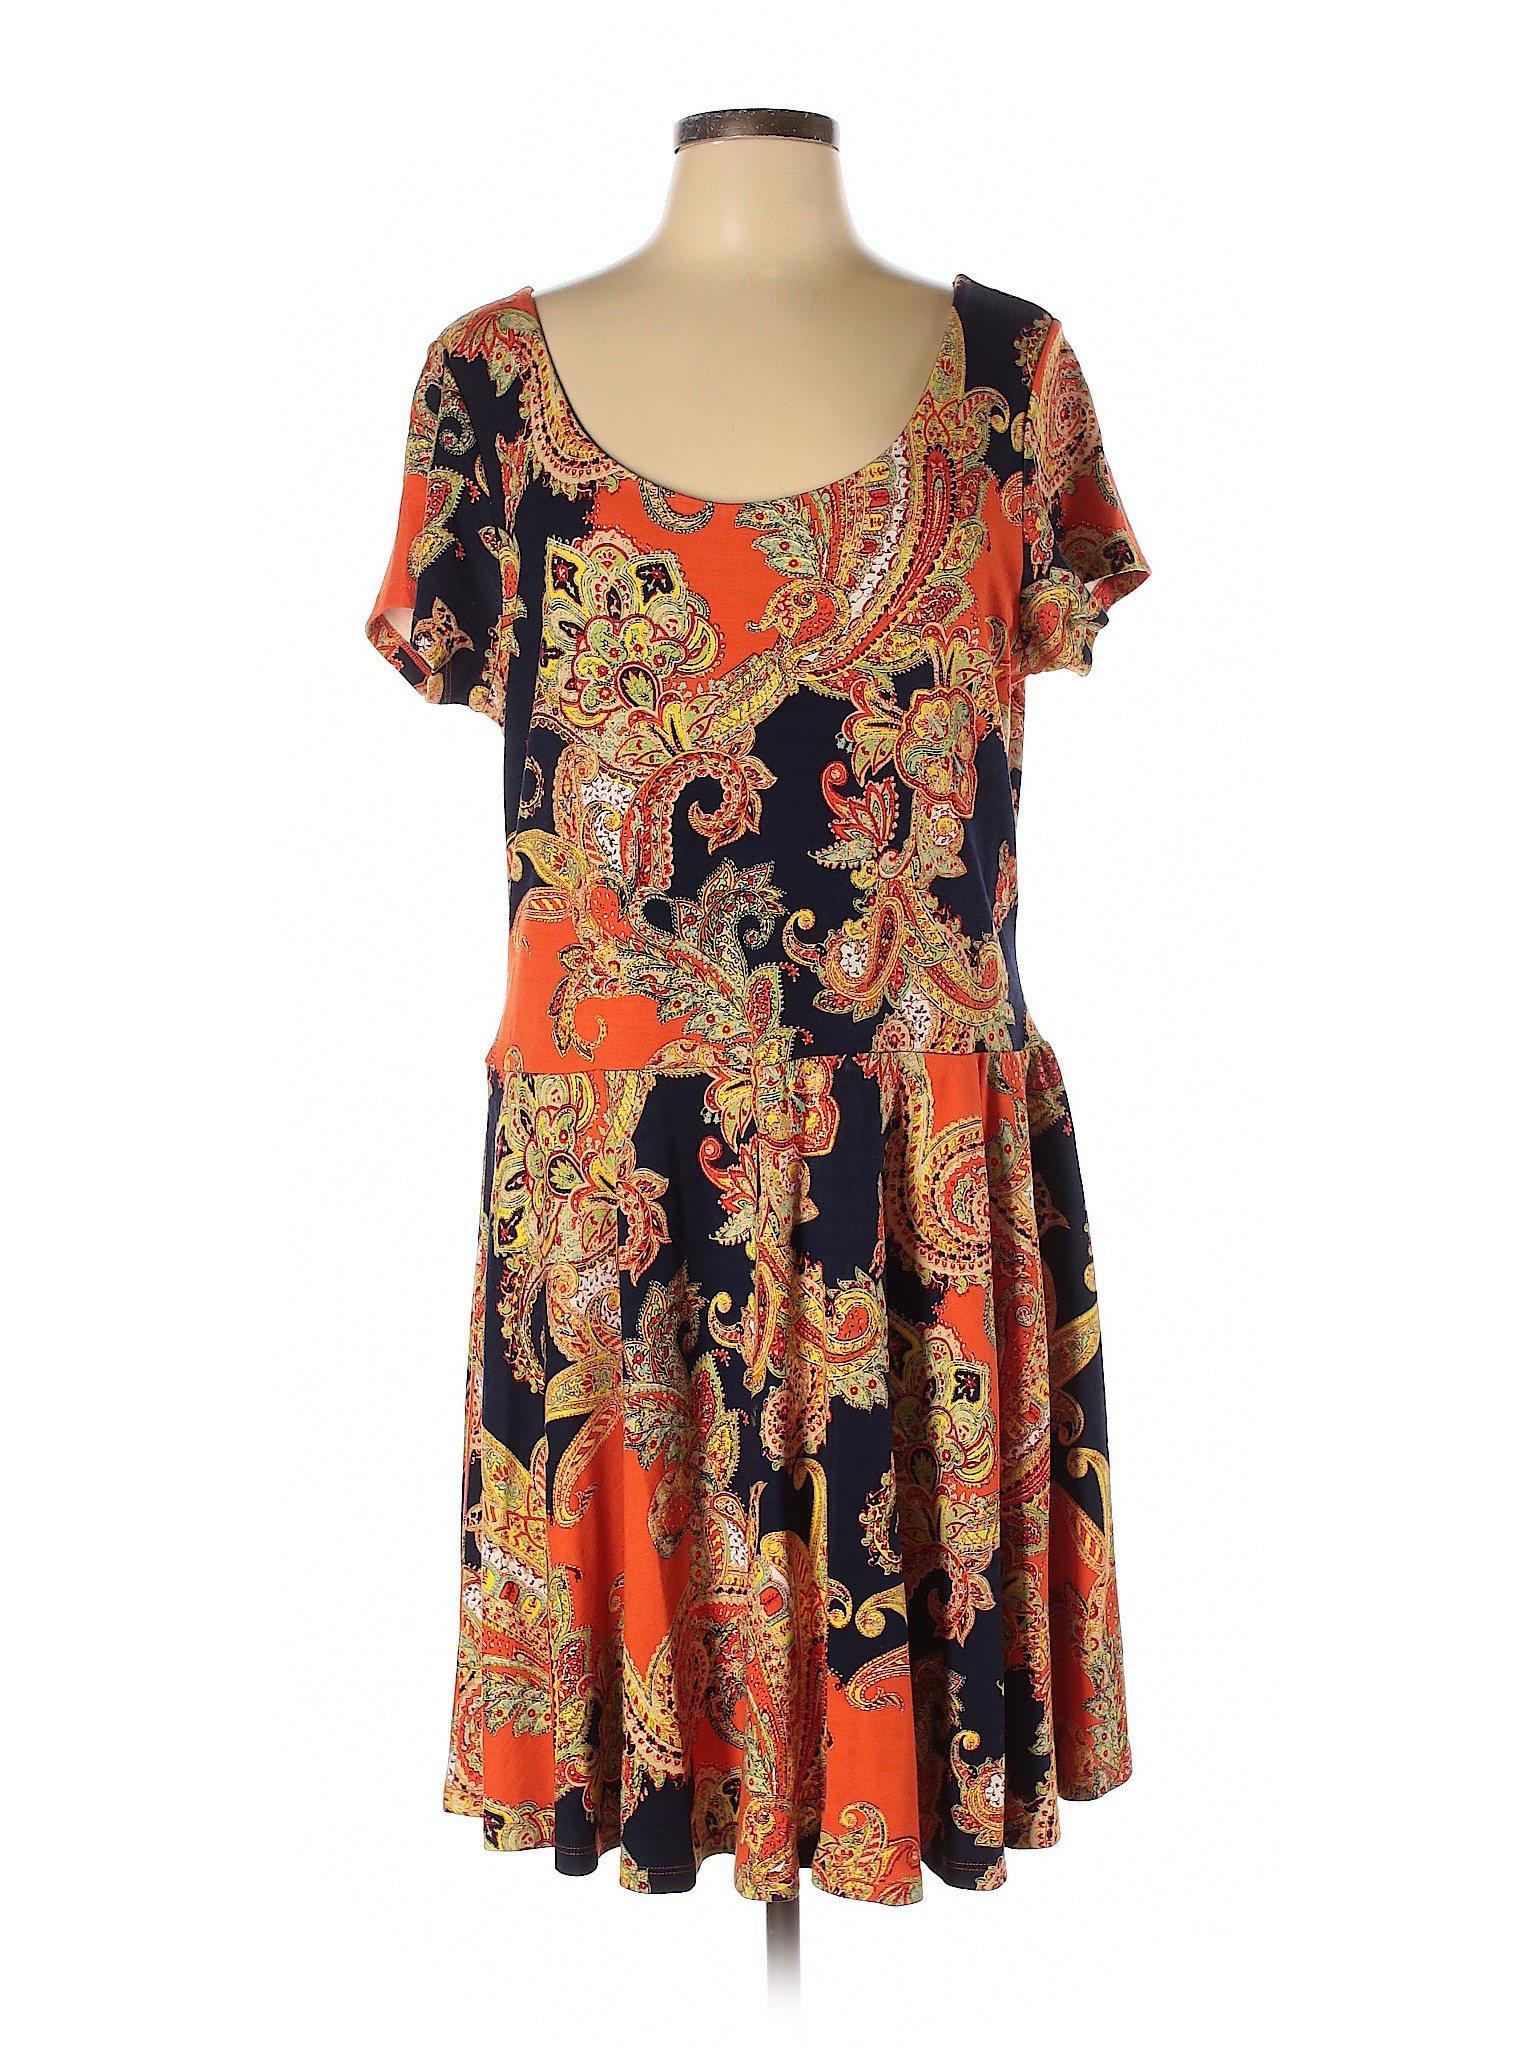 Lauren by Ralph Lauren Women Orange Casual Dress XL | eBay